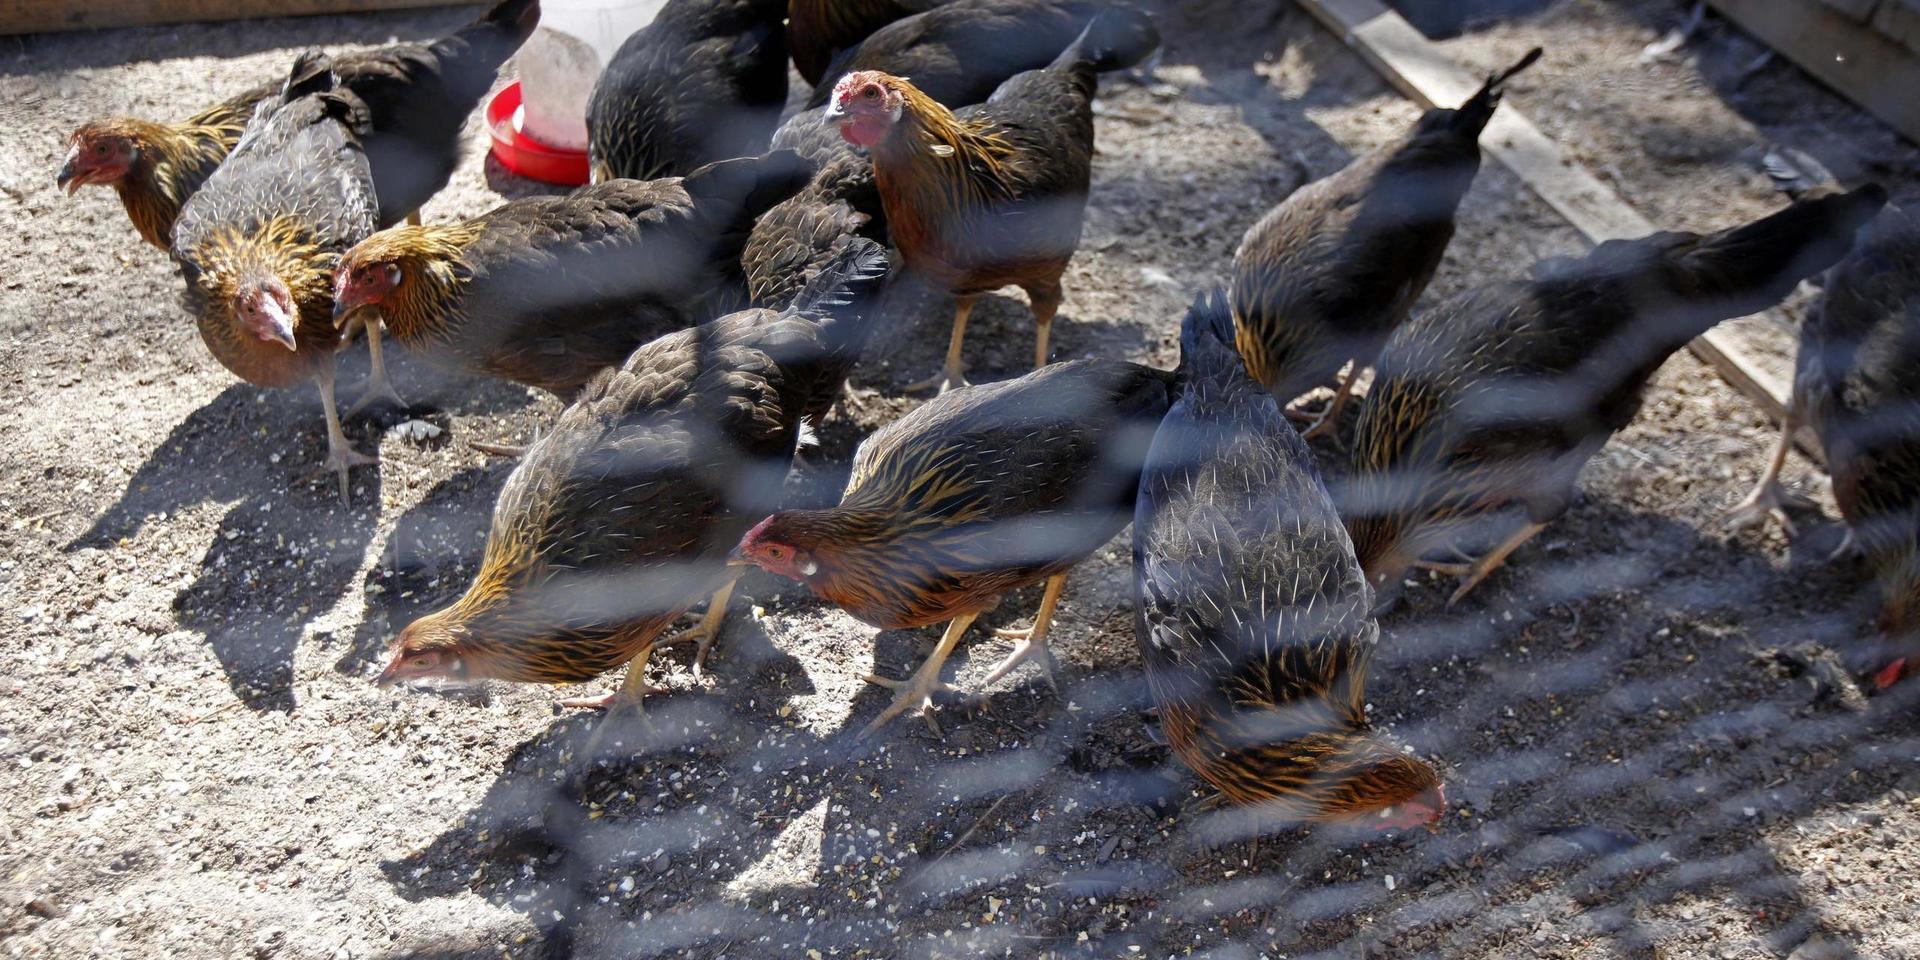 Fjäderfän kommer att behöva stanna inomhus sedan fågelinfluensa har upptäckts hos en gås i sydvästra Norge. Arkivbild av höns, tagen i annat sammanhang.